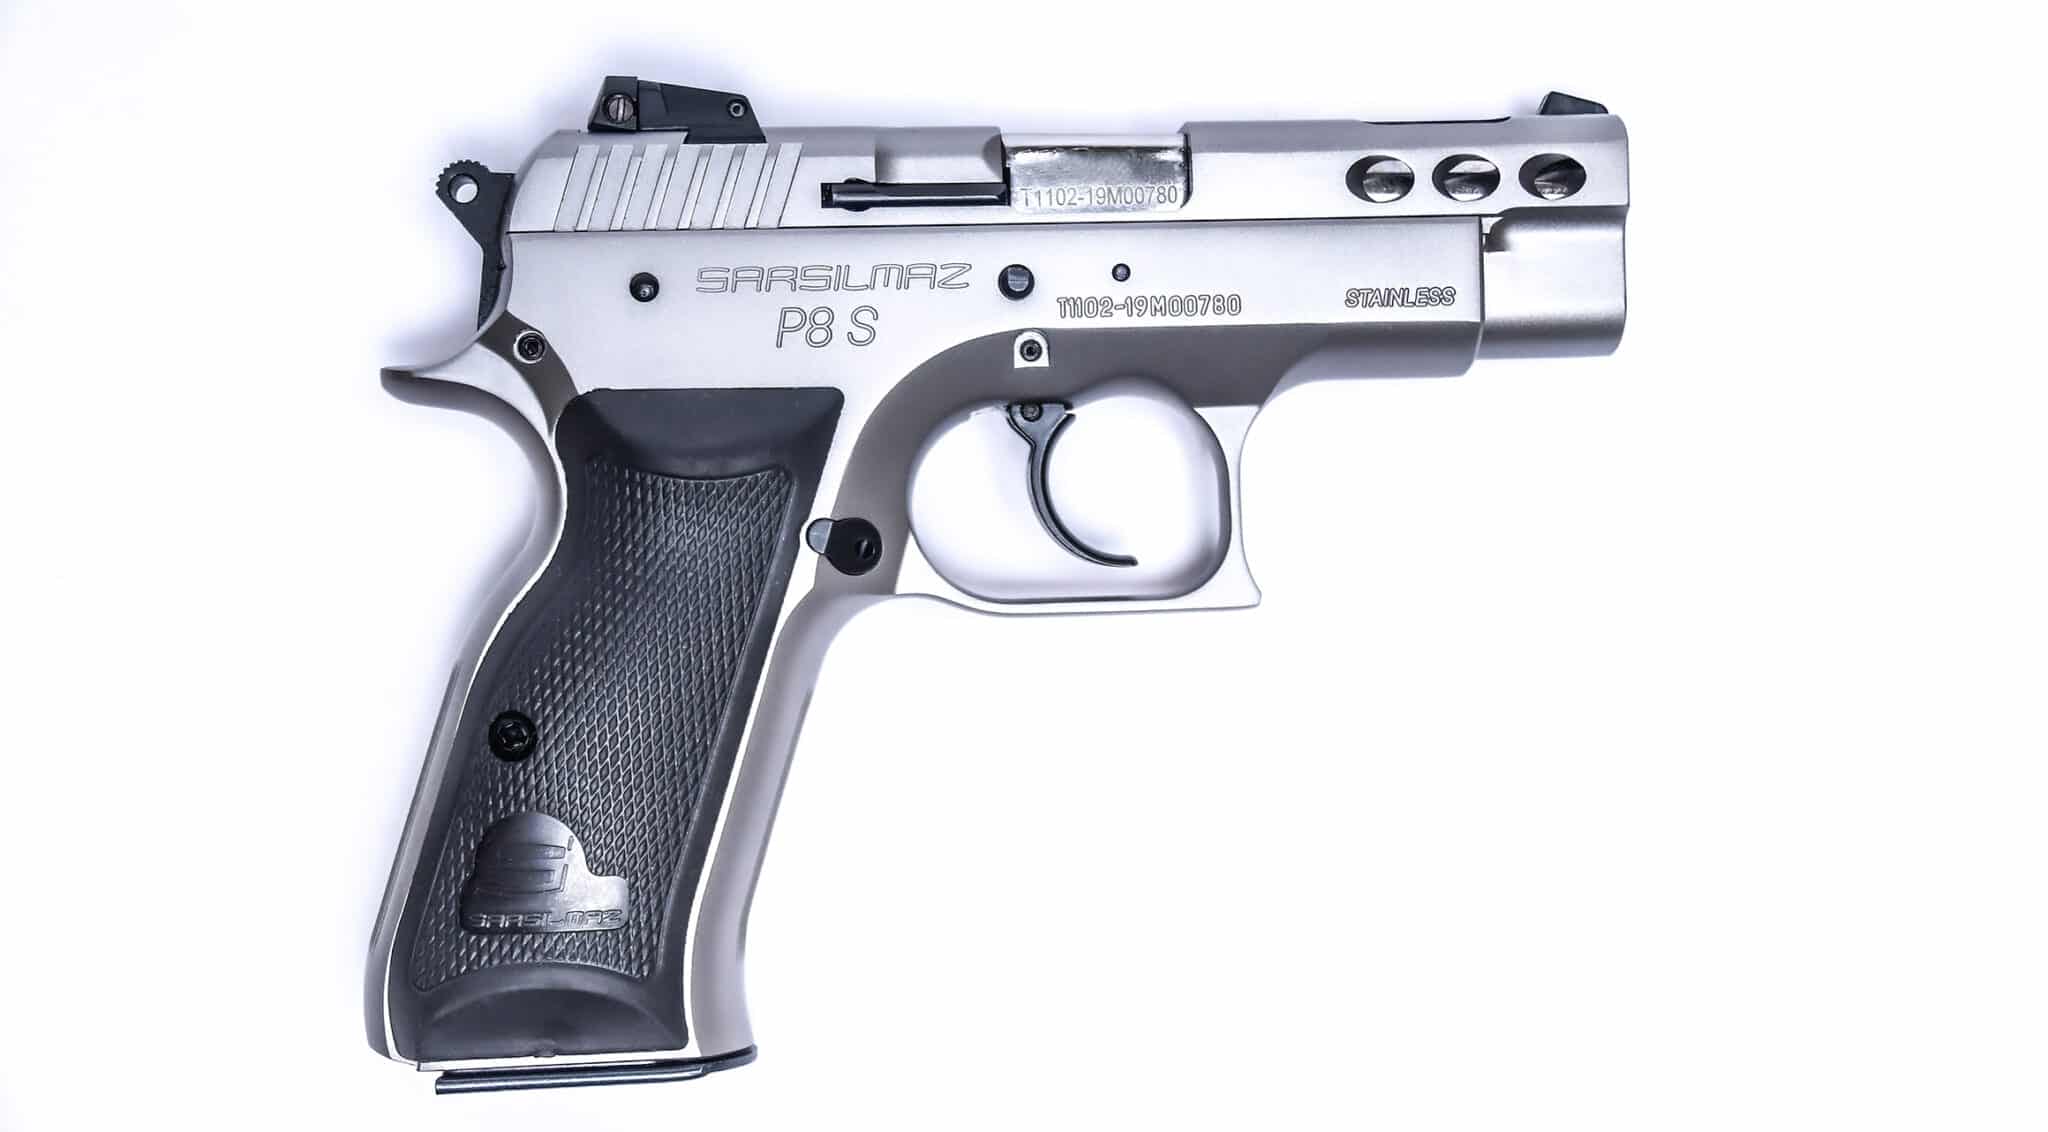 9mm pistol